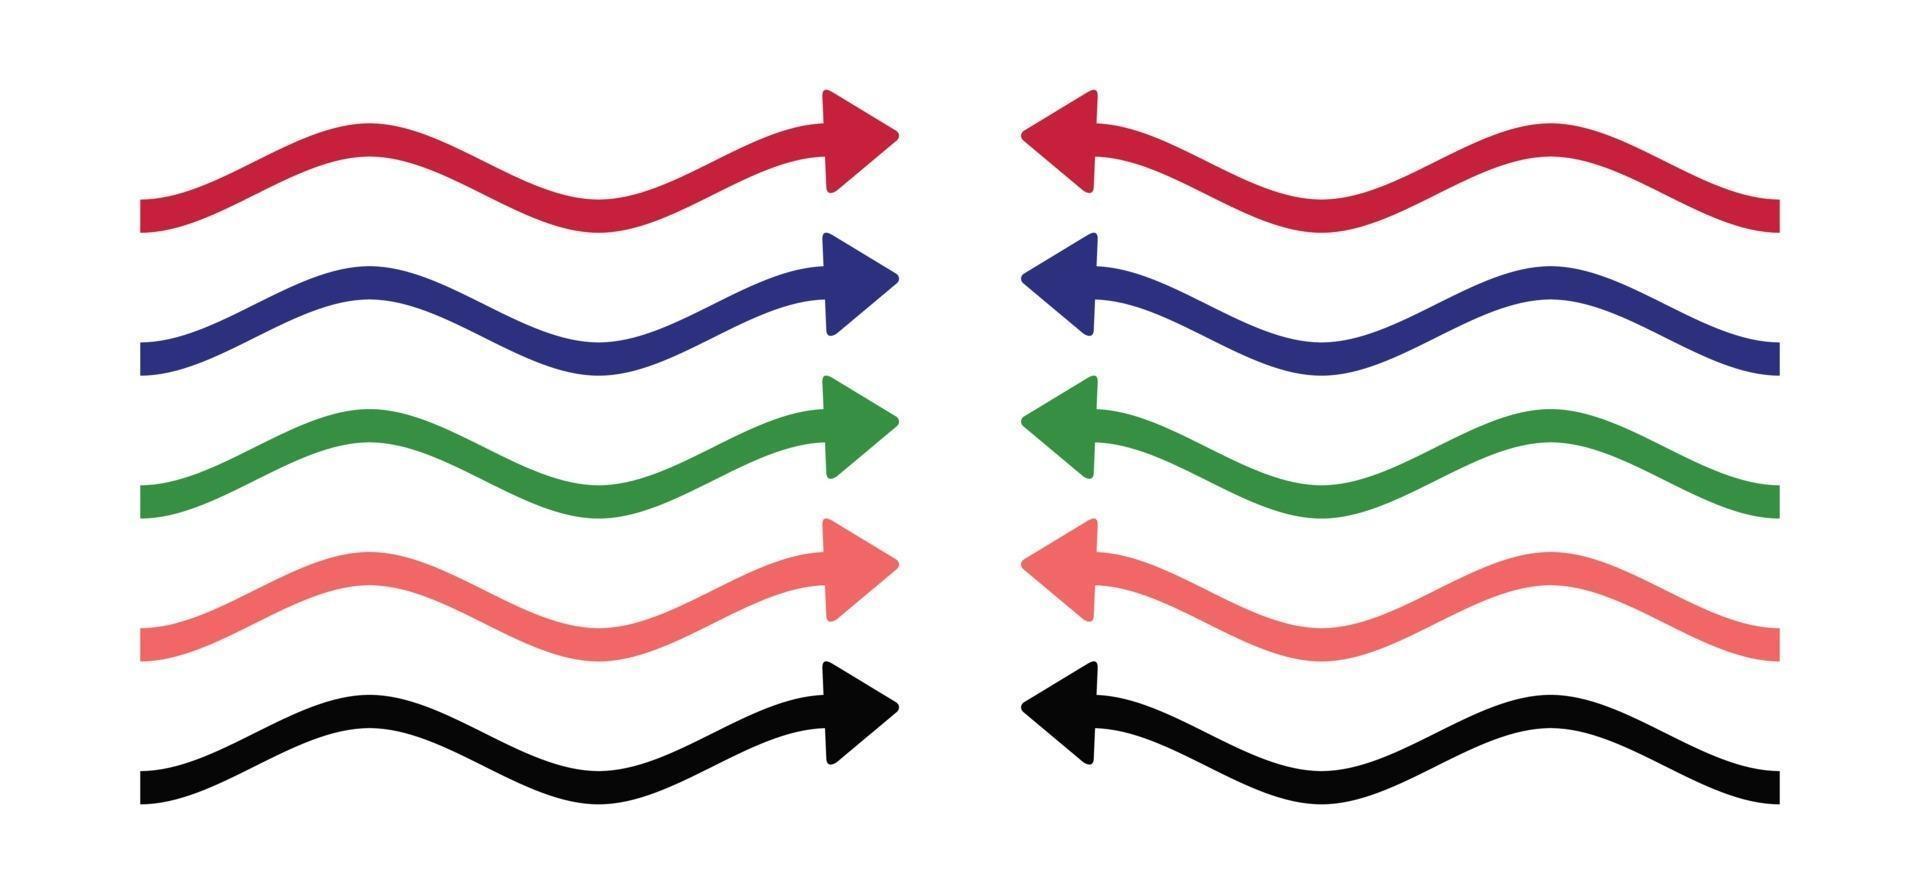 símbolo de seta de onda, setas direita e esquerda vetor